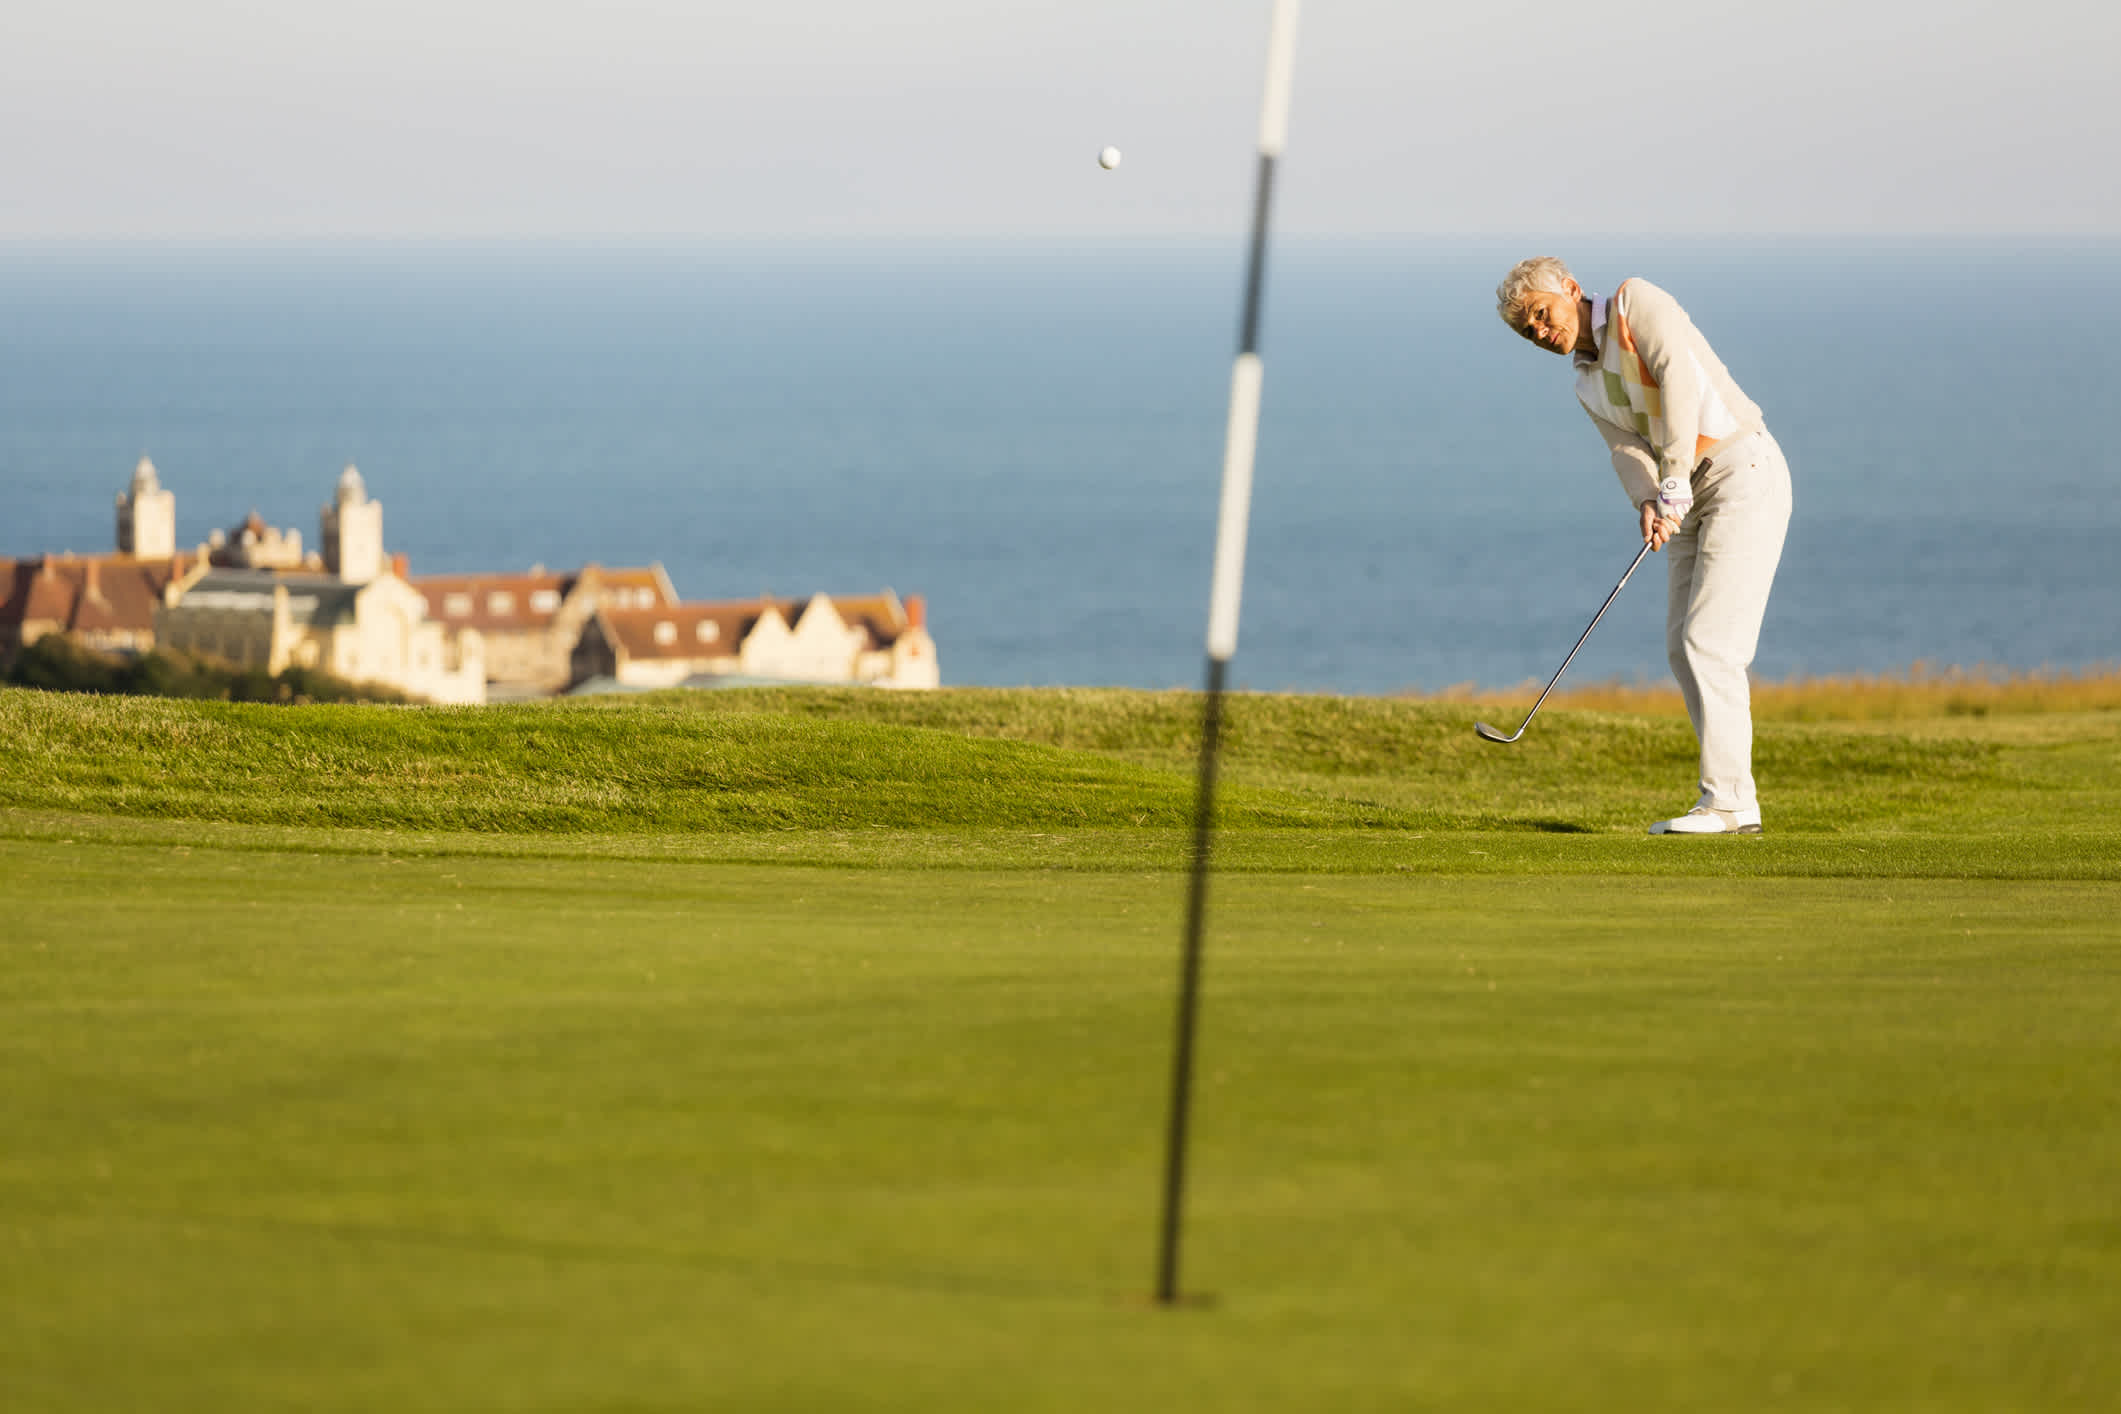 Ein Golfer schlägt den Ball auf einem englischen Golfplatz auf das Grün.

